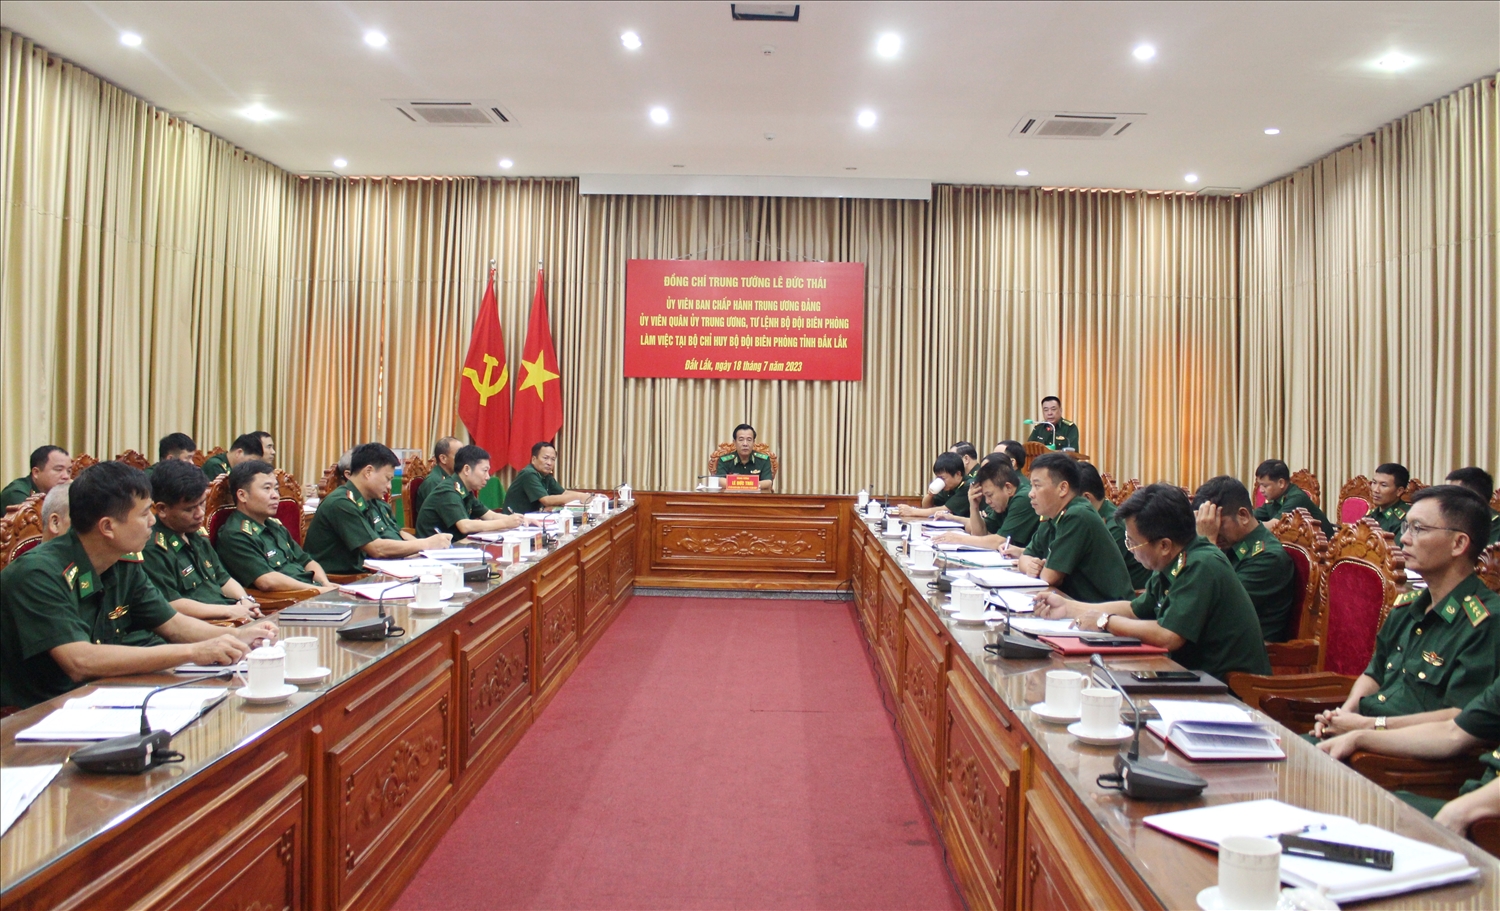 Đoàn công tác Bộ Tư lệnh Bộ đội Biên phòng làm việc tại Bộ Chỉ huy Bộ đội Biên phòng tỉnh Đắk Lắk